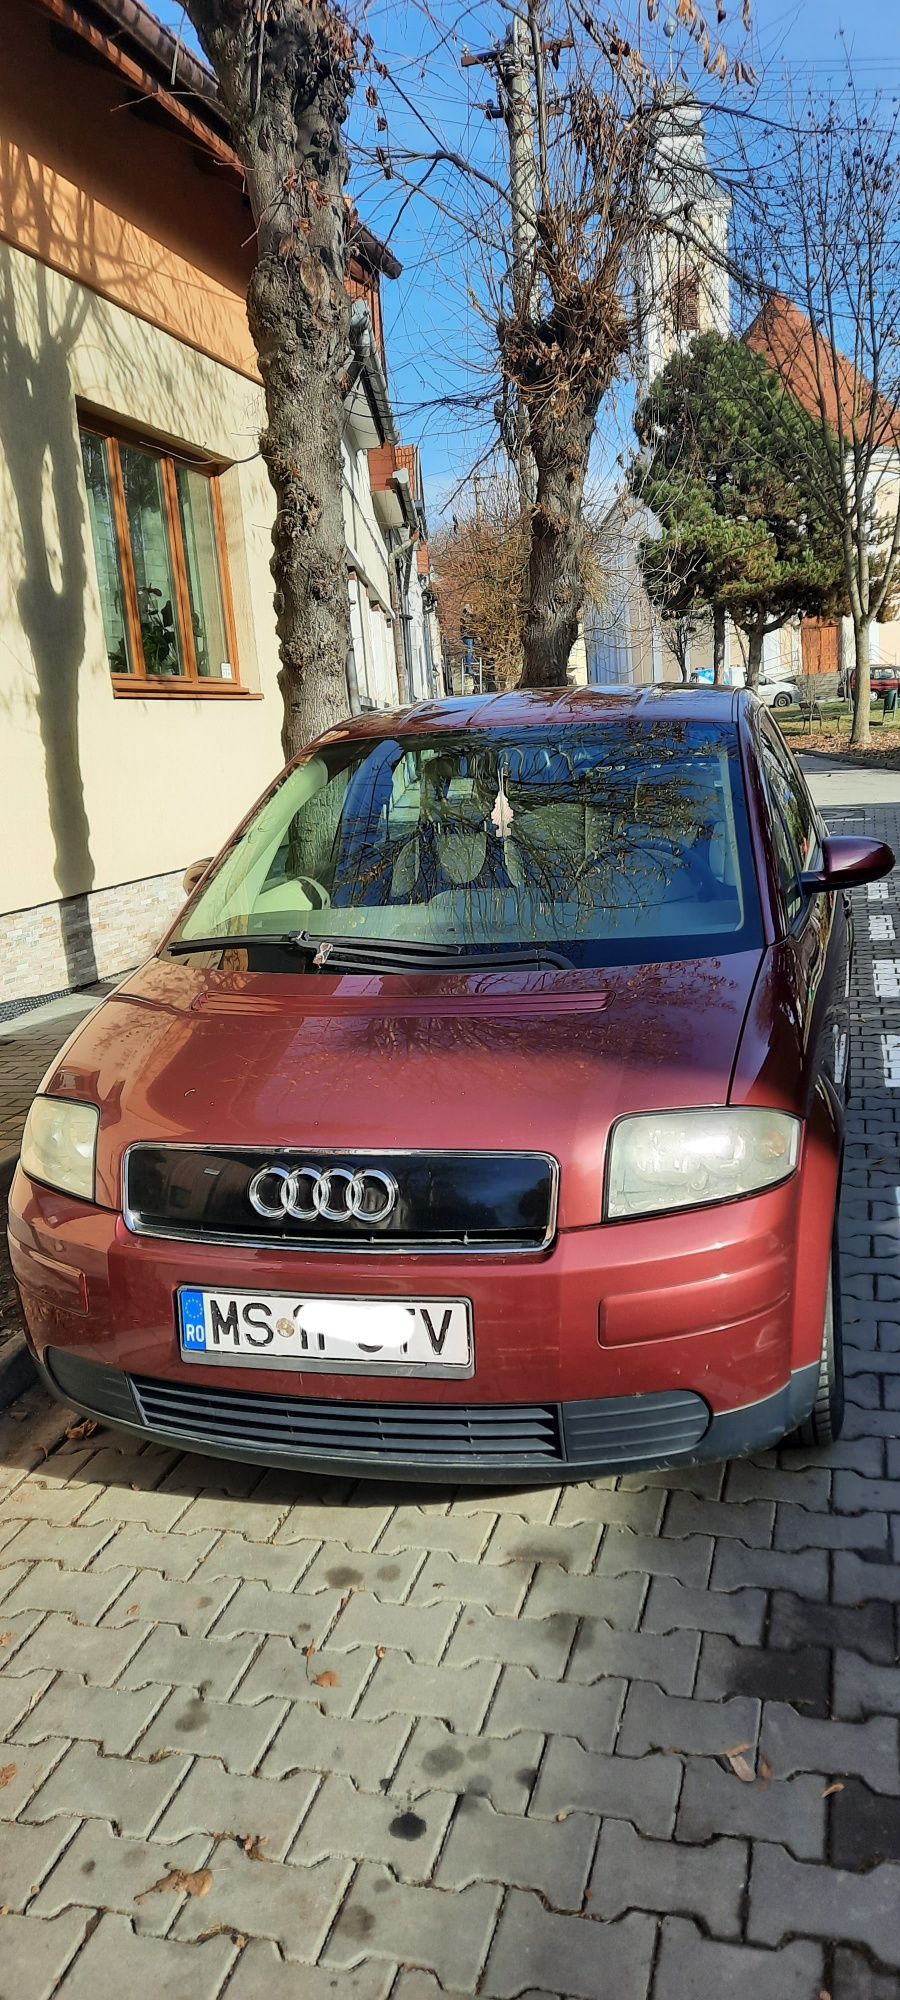 Vând Audi A2 din anul 2003